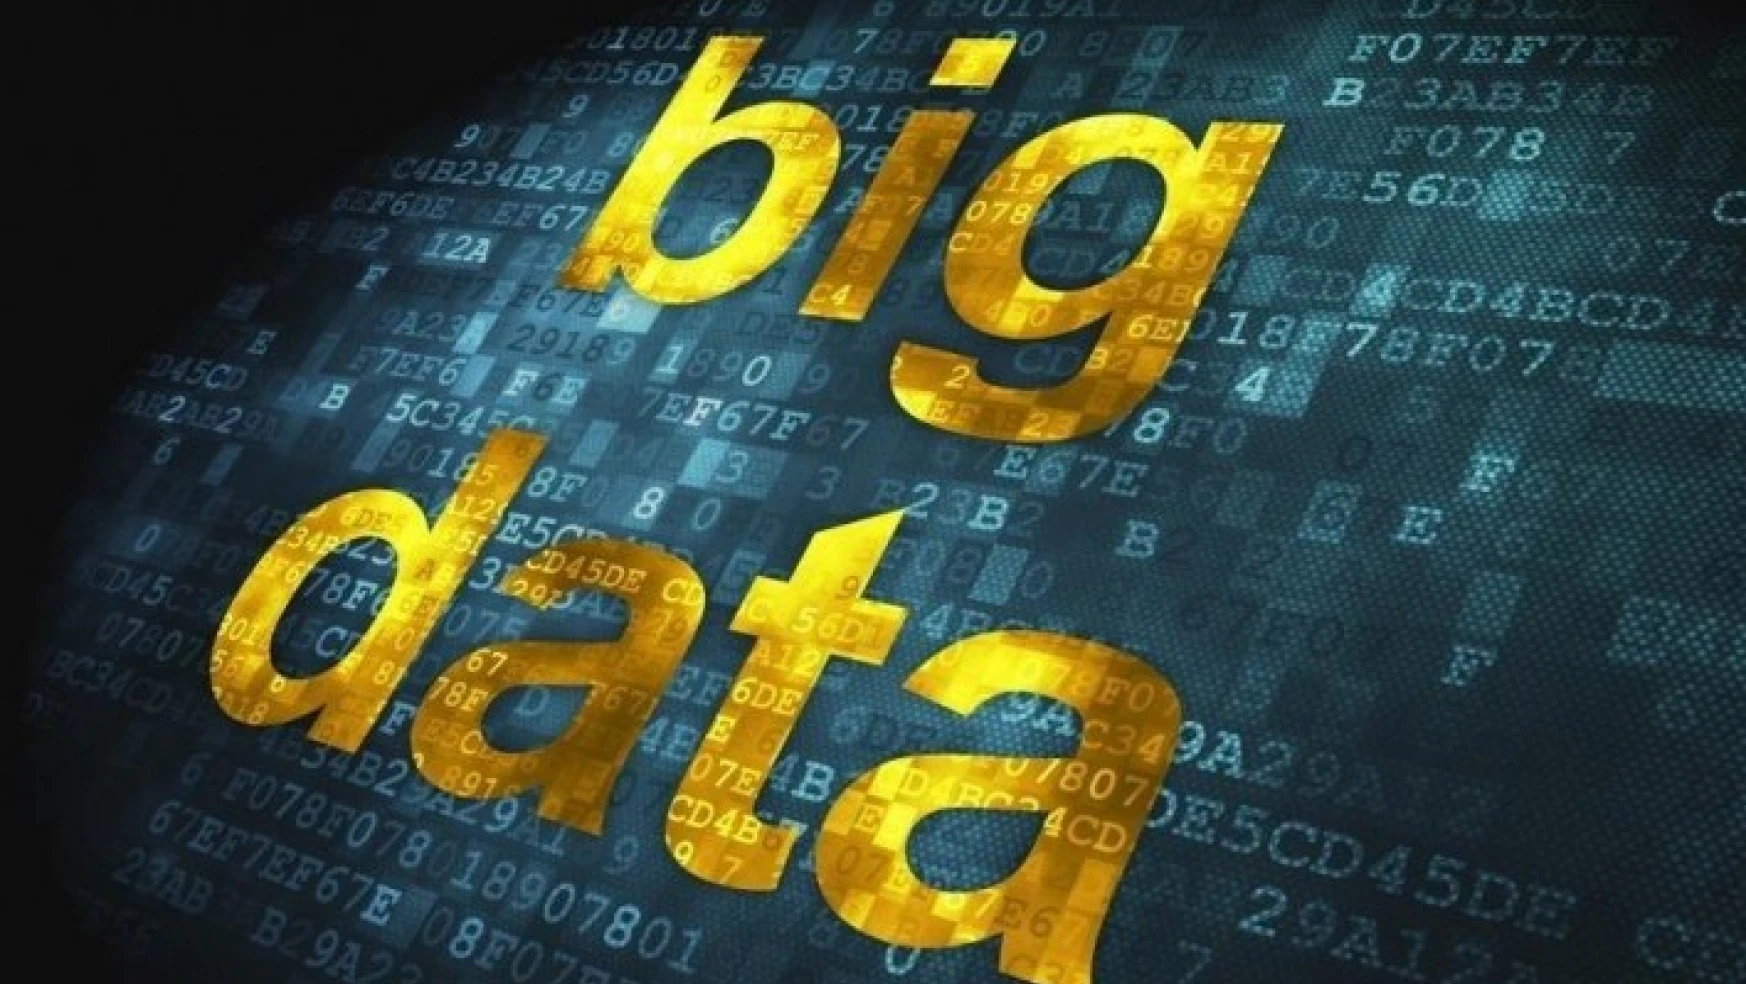 Big Data (Büyük Veri)